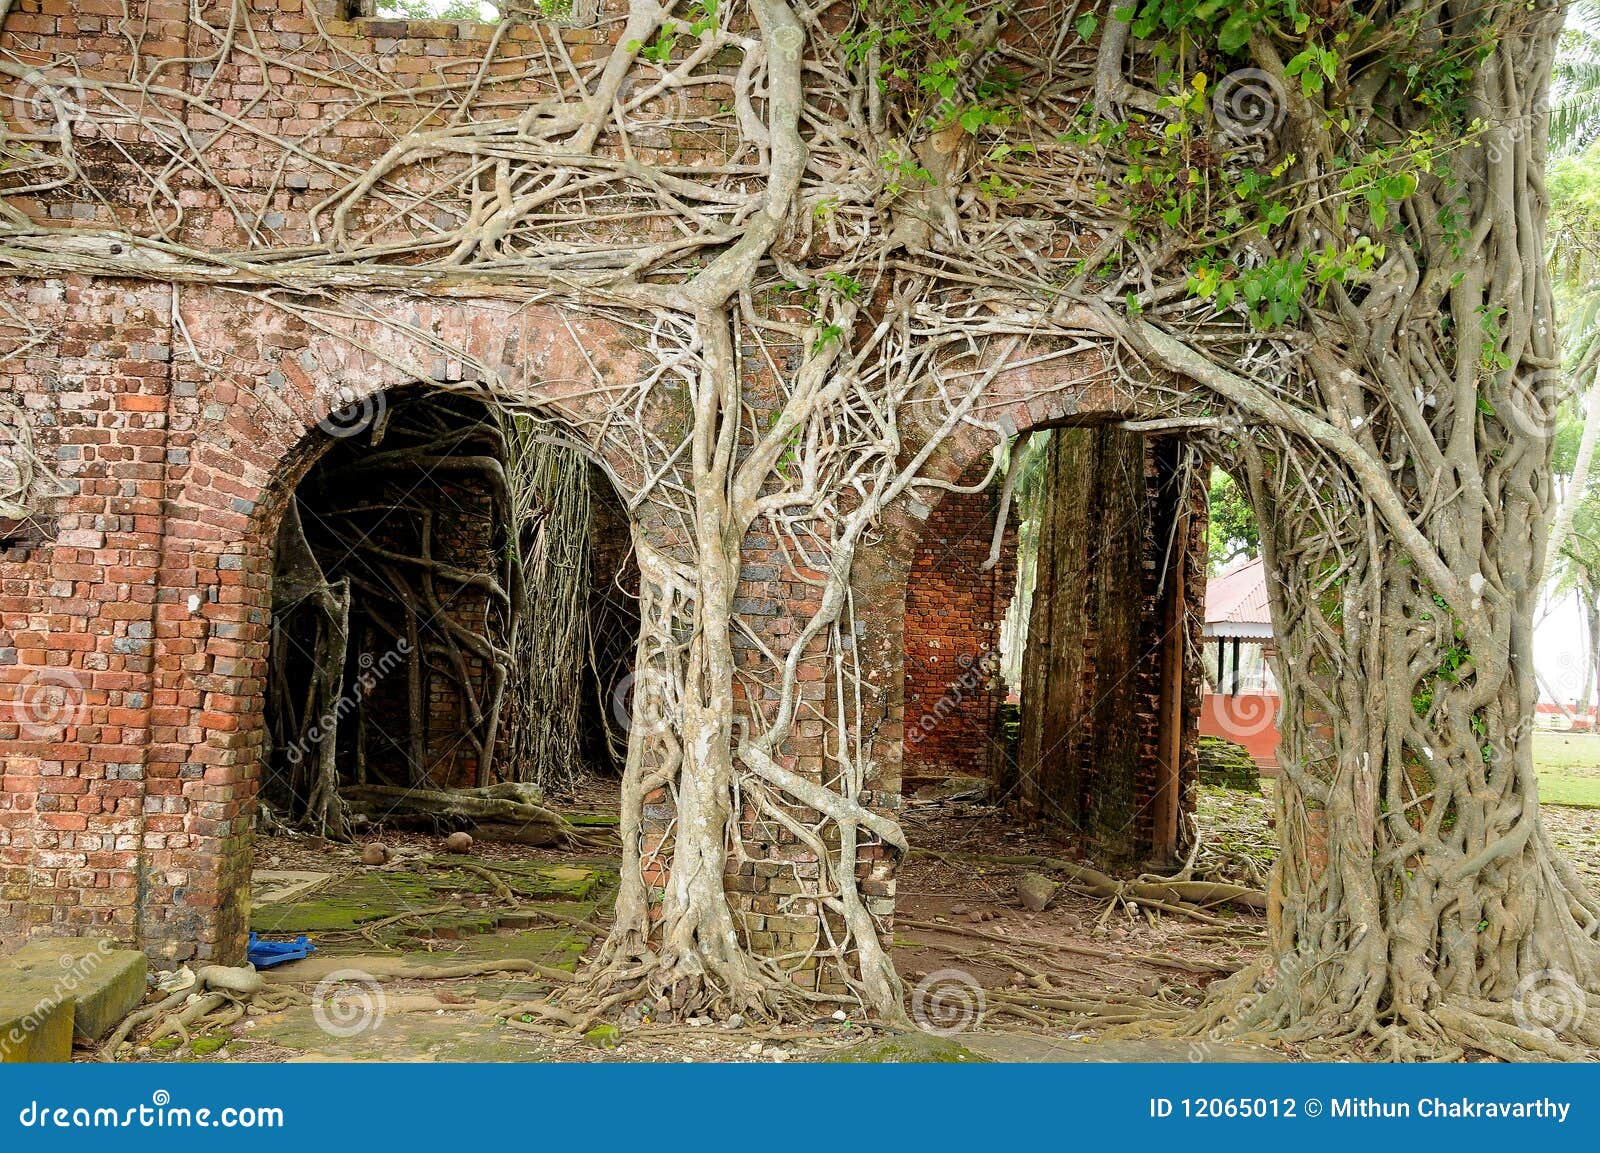 roots of strangler tree climb over wall